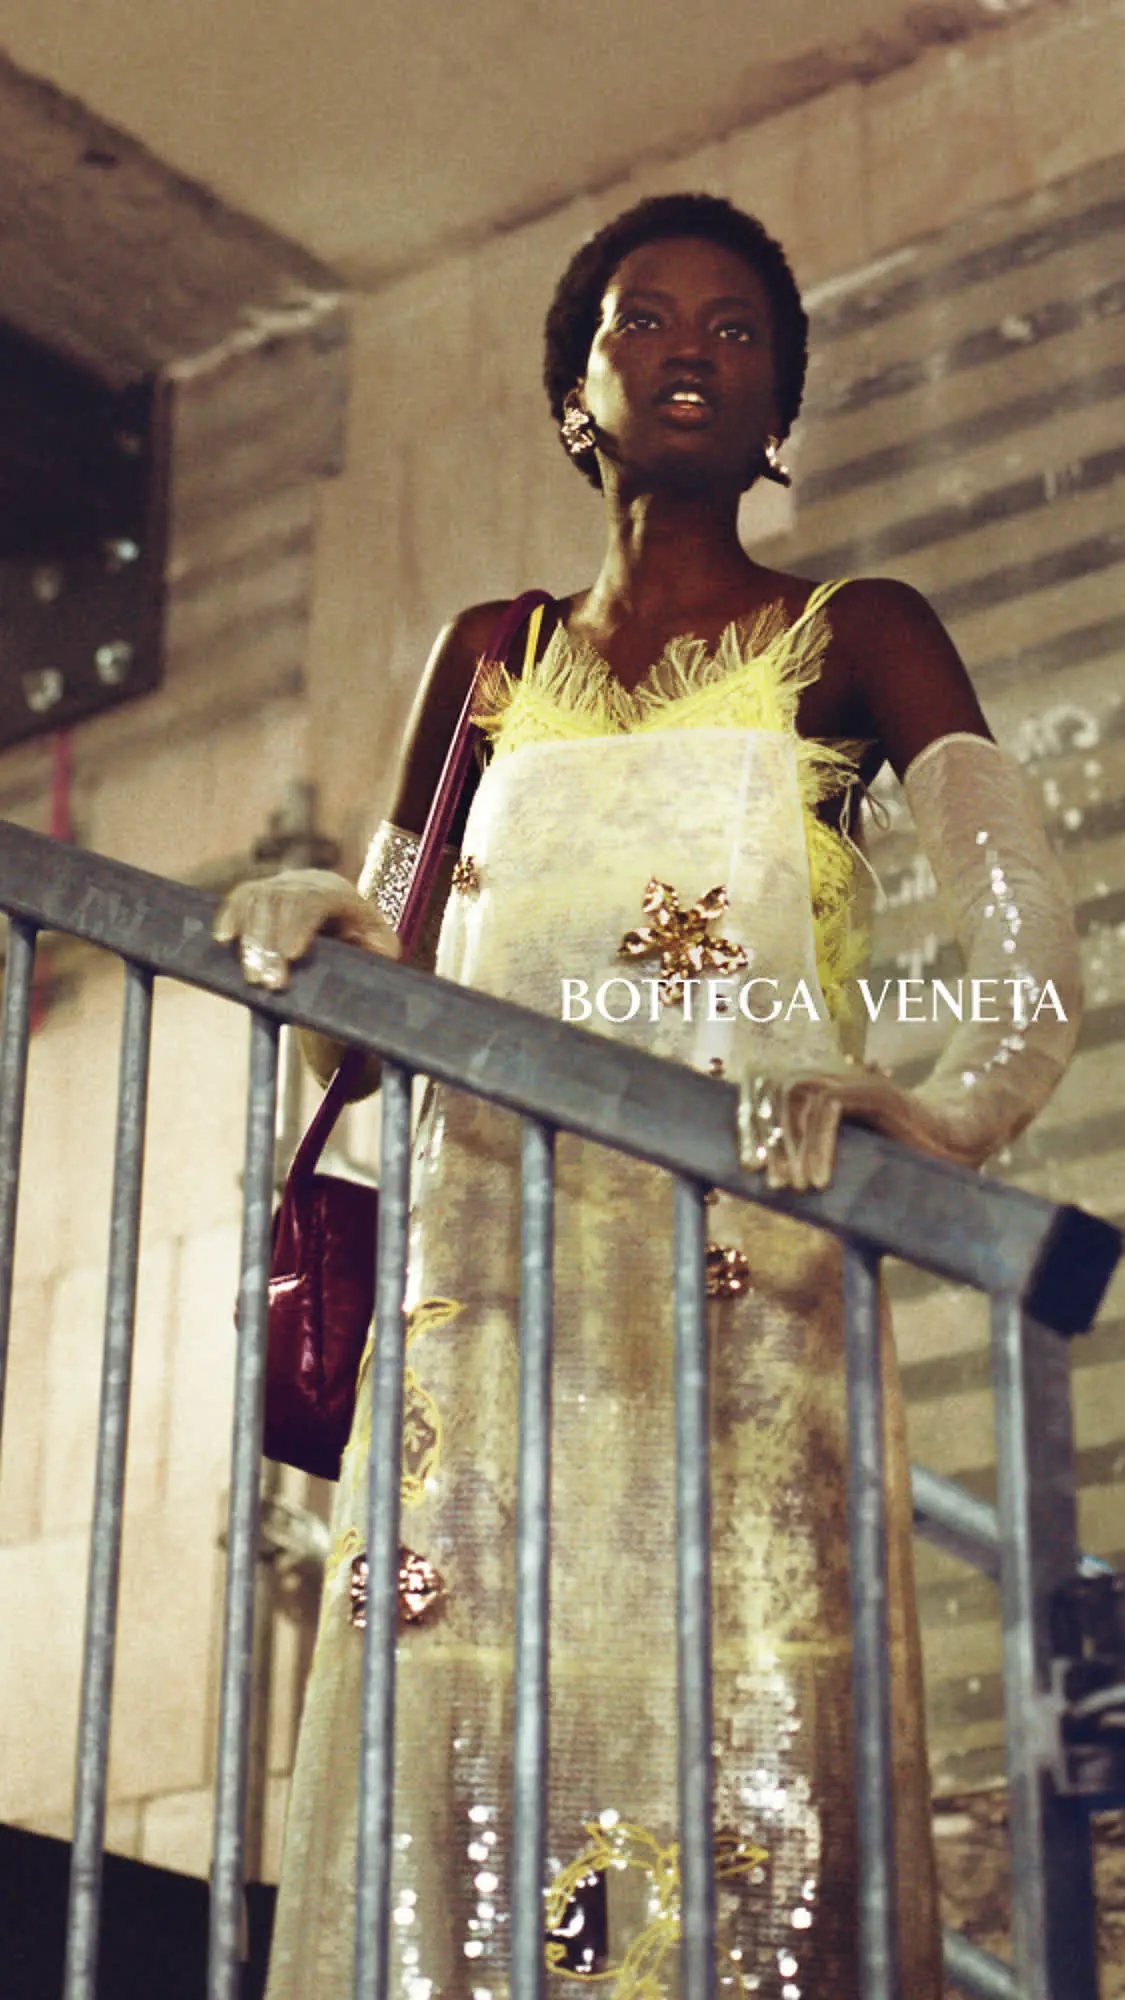 Bottega Veneta 2022 冬季系列广告大片